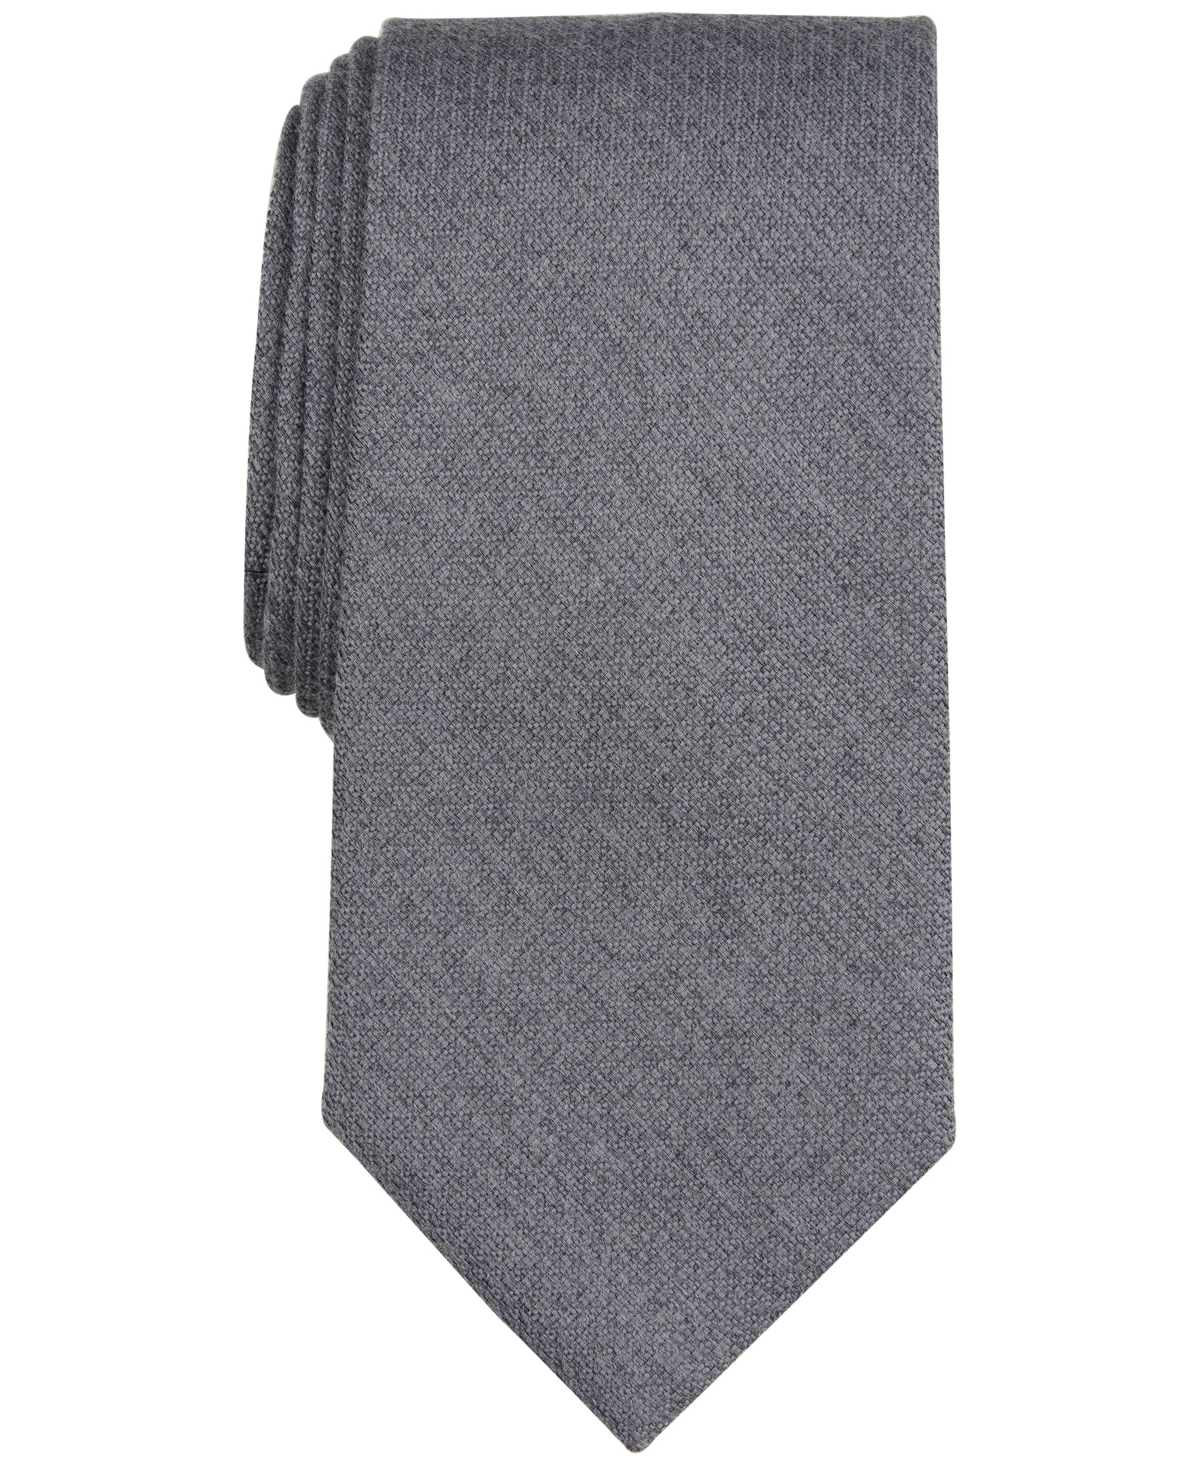 Michael Kors Men's Solid Black Tie In Charcoal